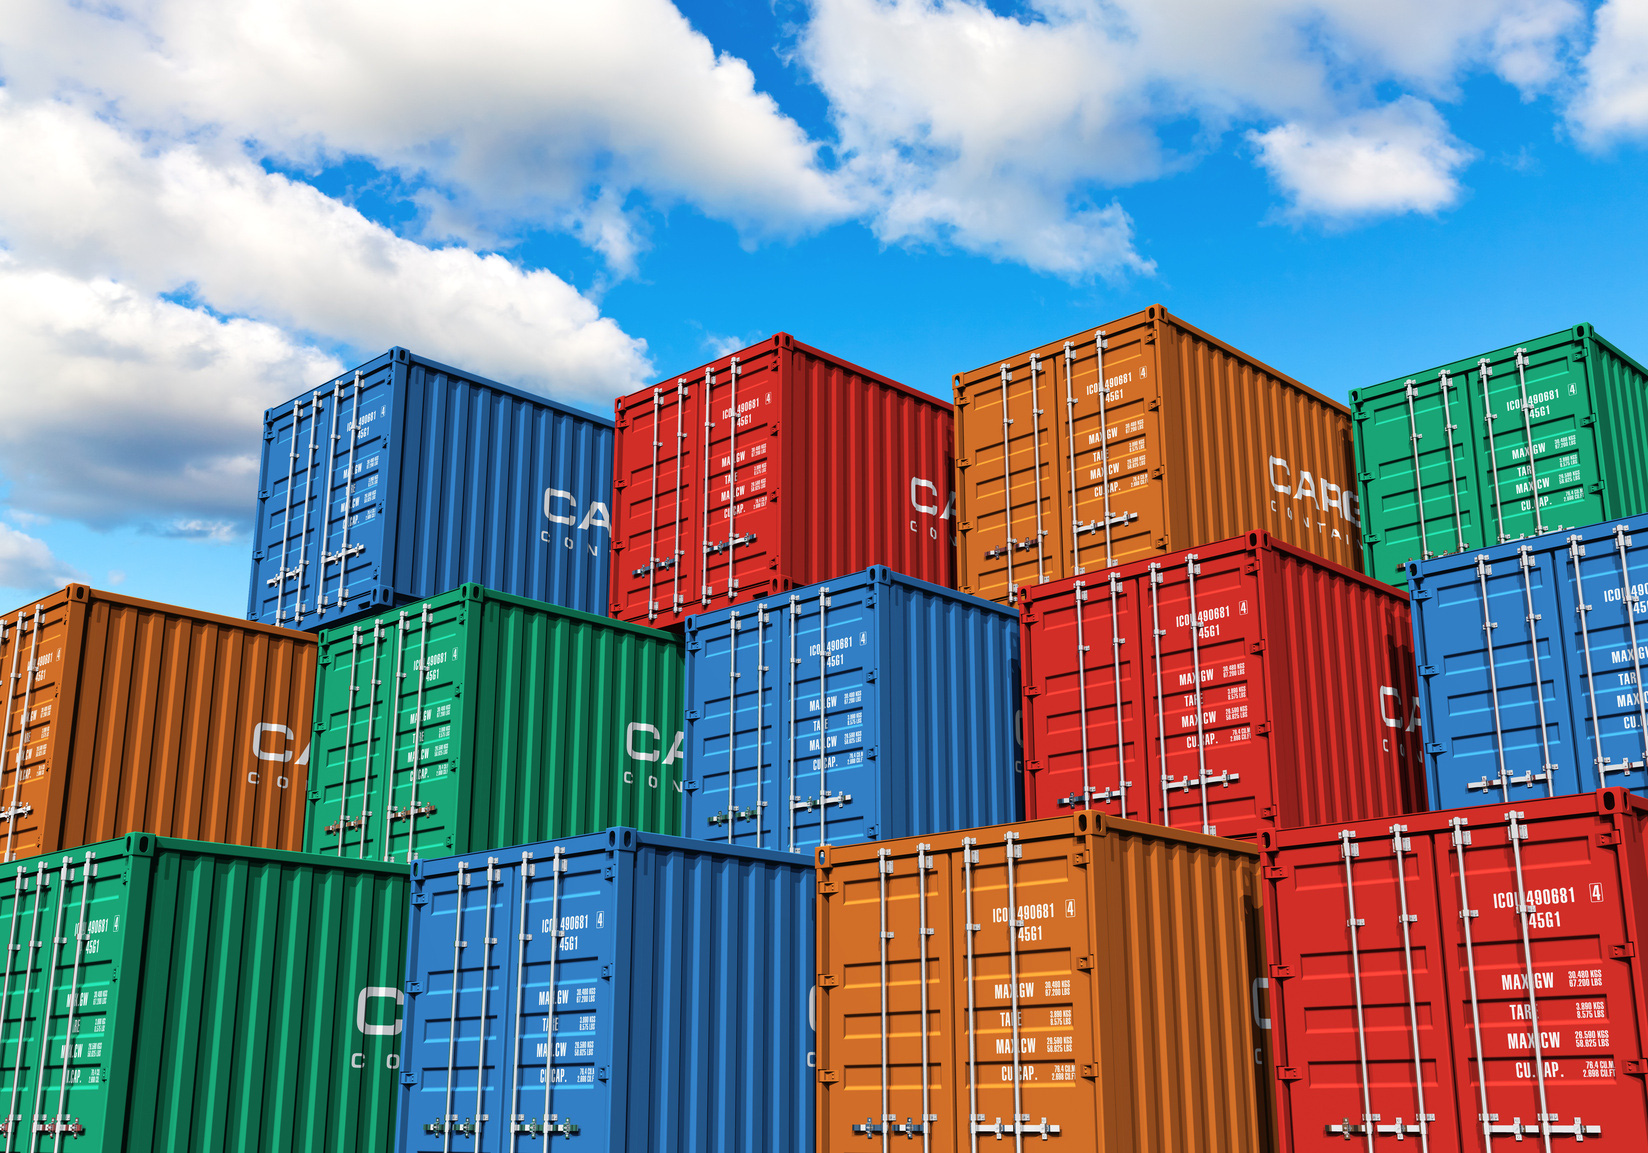 Khan hiếm container rỗng, giá thuê tăng cao: Hoà Phát quyết định sản xuất container với công suất 500.000 TEU/năm - Ảnh 3.